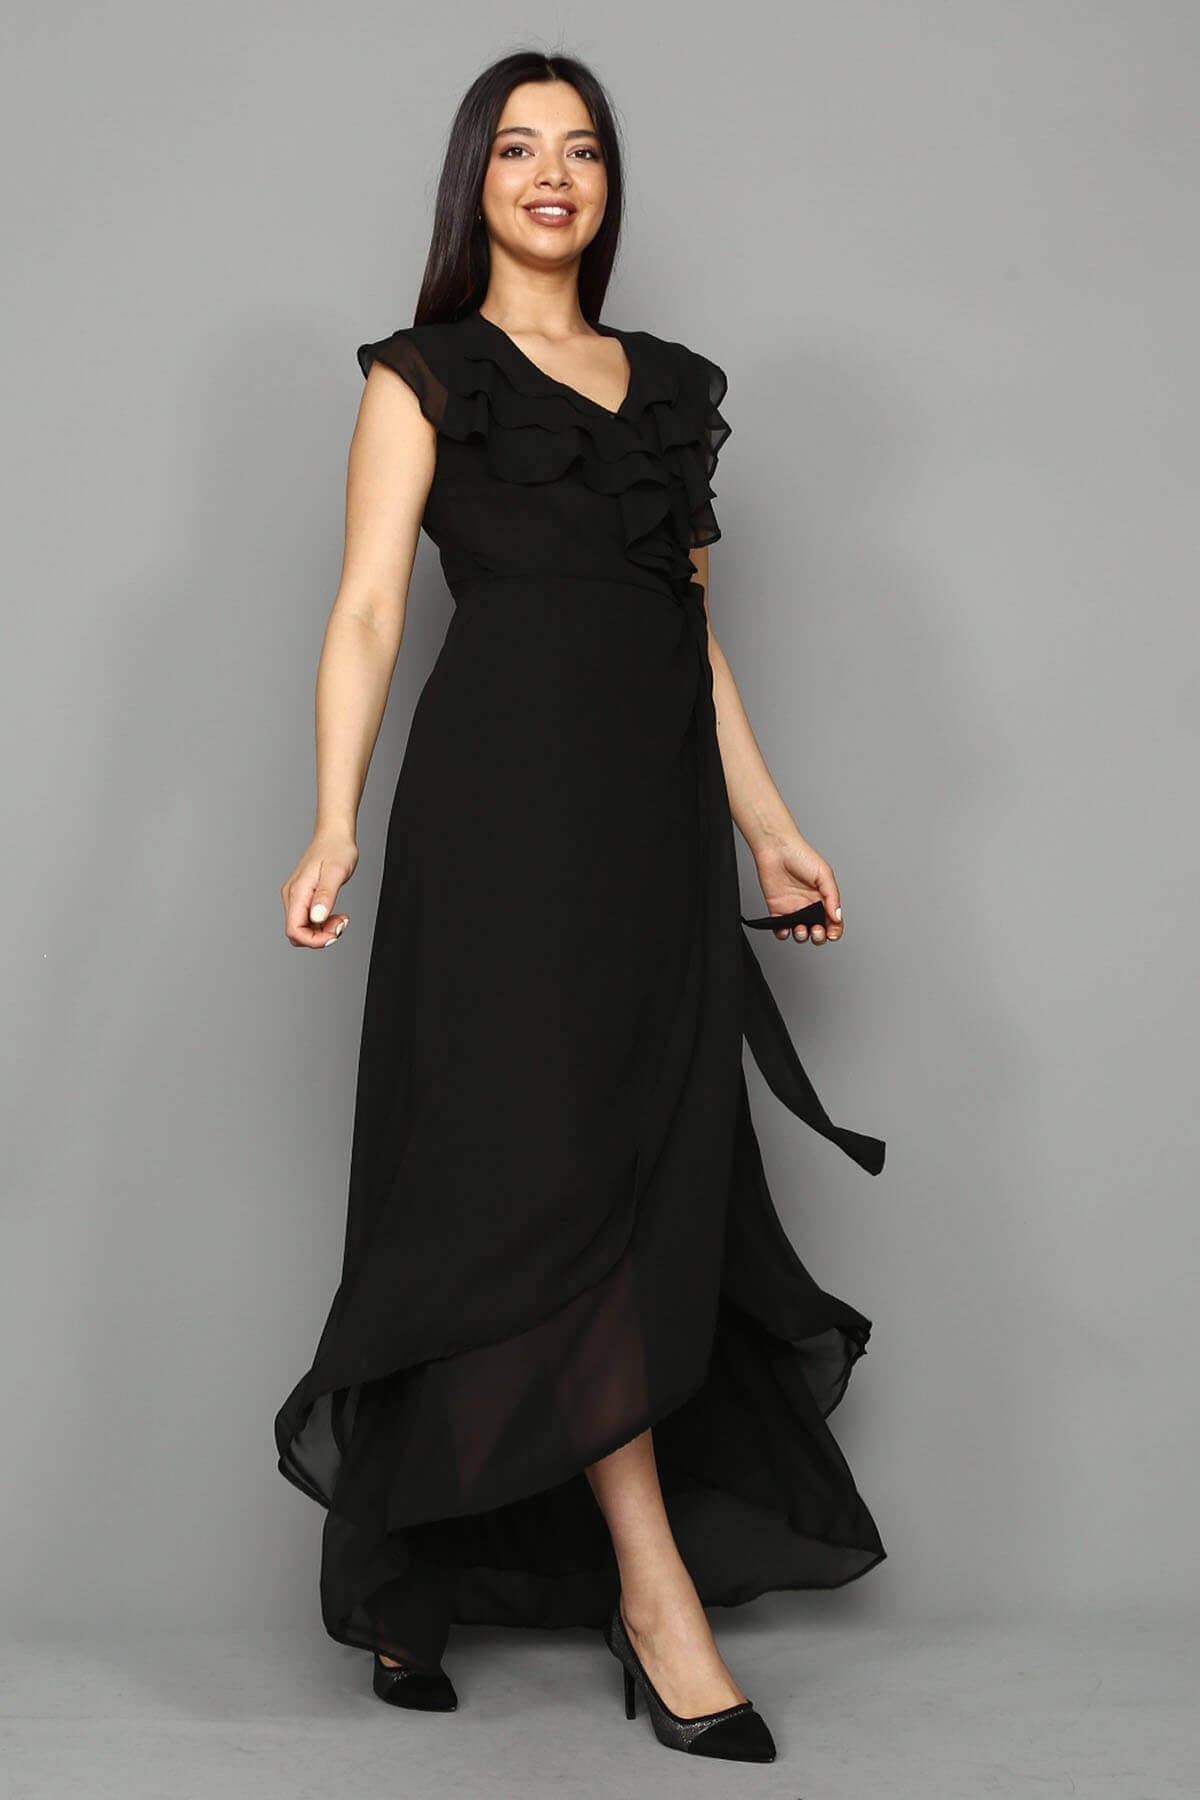 Siyah Fırfırlı Şifon Elbise - Moda Kapımda İle Kapınızda!